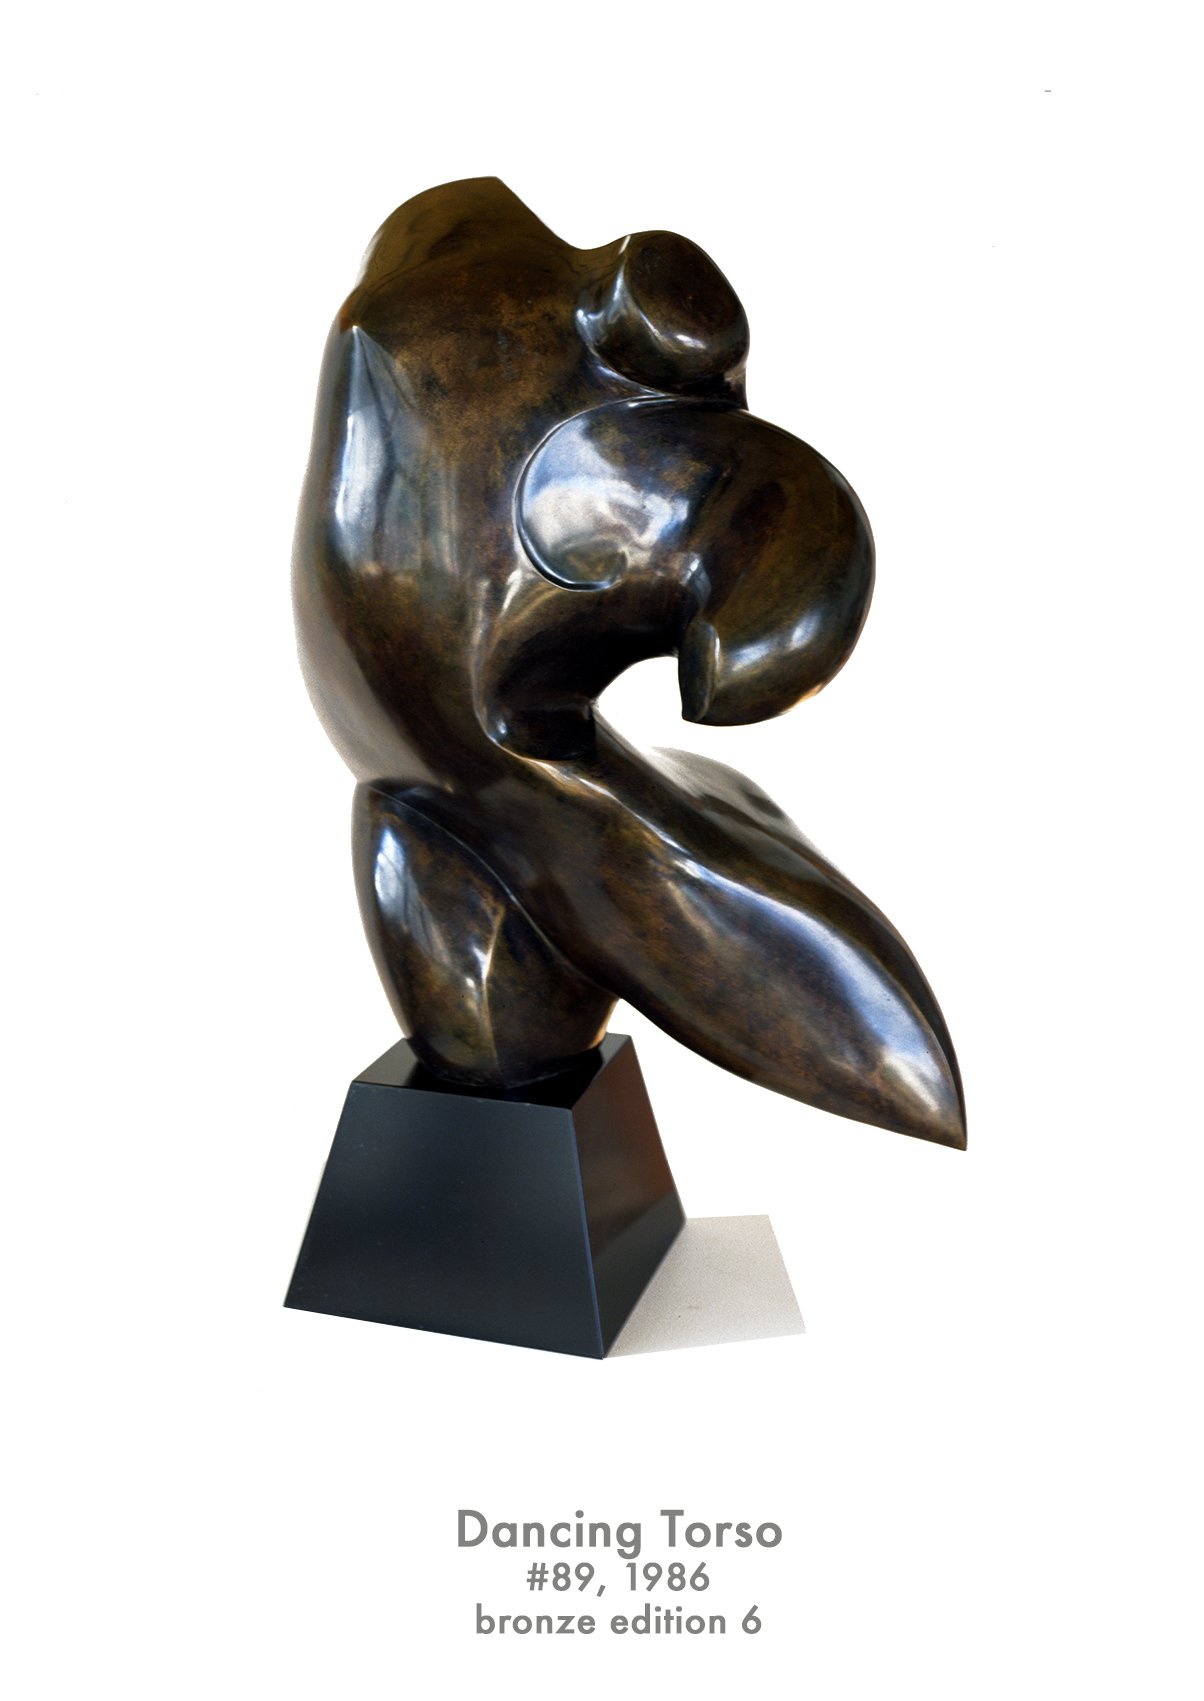 Dancing Torso, 1986, bronze, #89